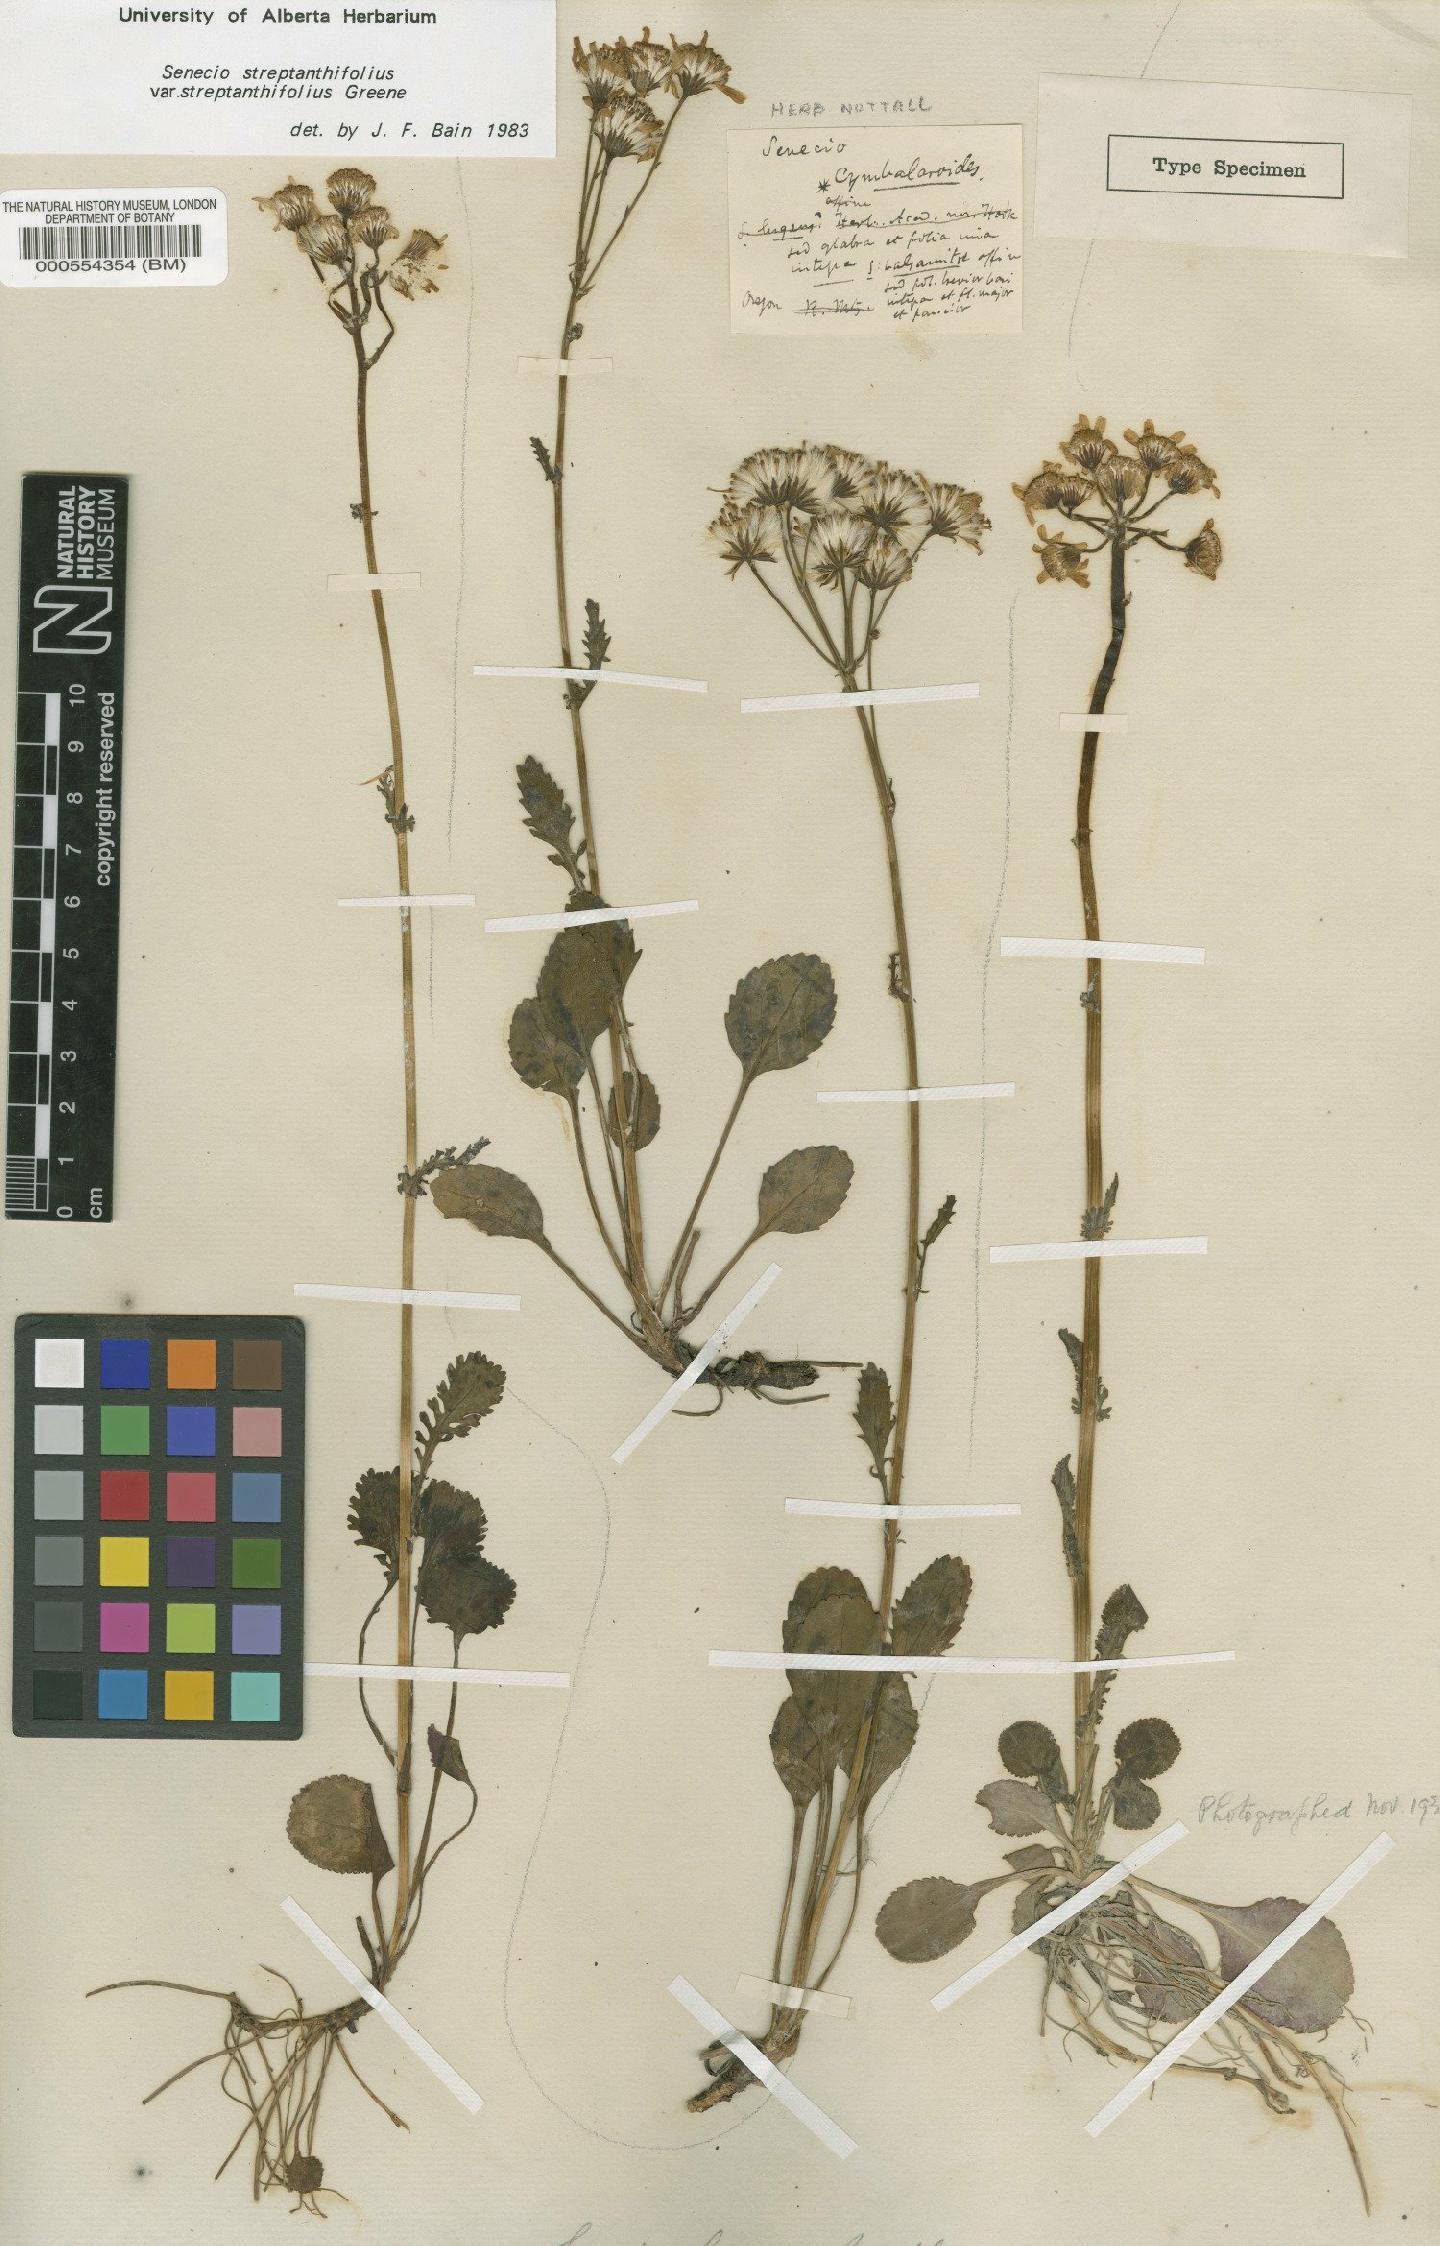 To NHMUK collection (Senecio streptanthifolius var. streptanthifolius Greene; Type; NHMUK:ecatalogue:4978795)